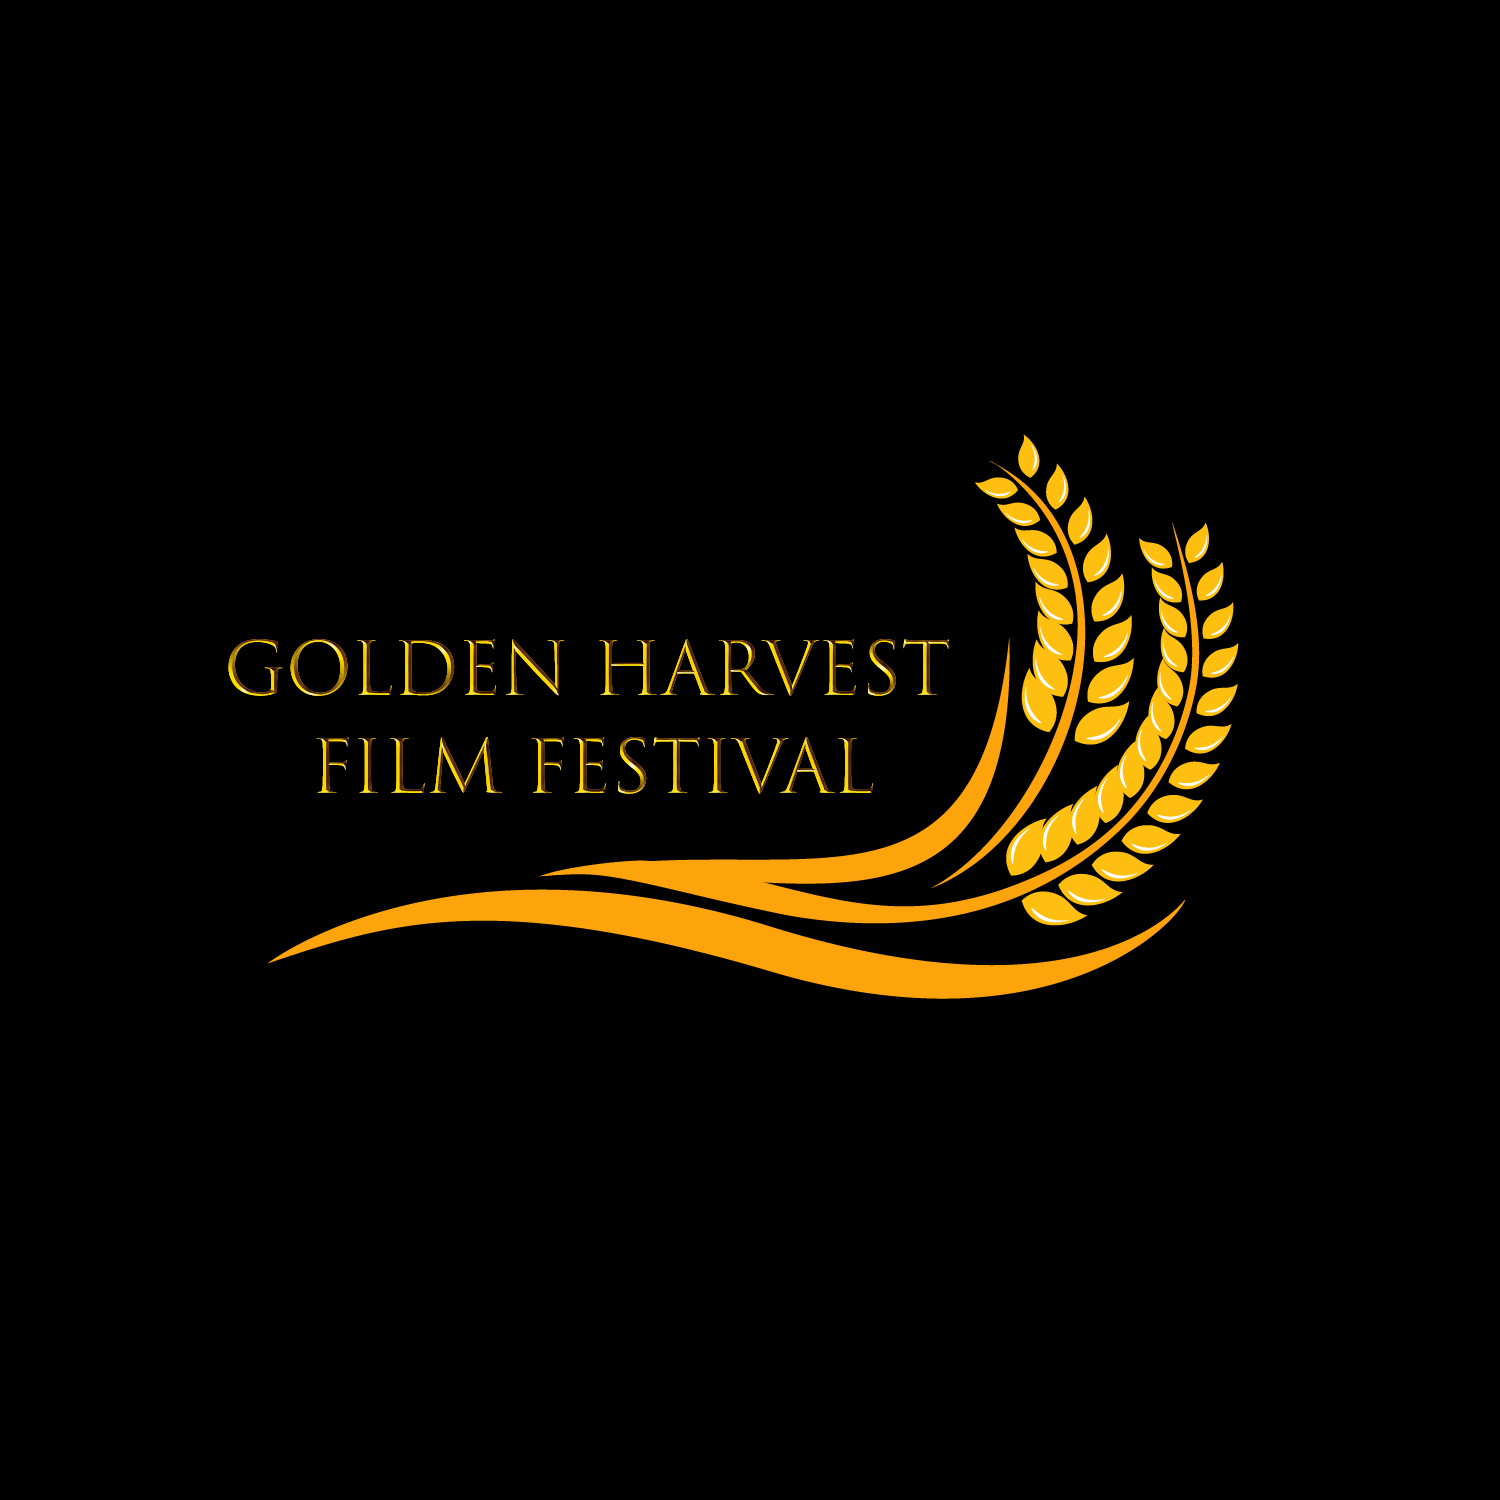 Golden Harvest Film Festival